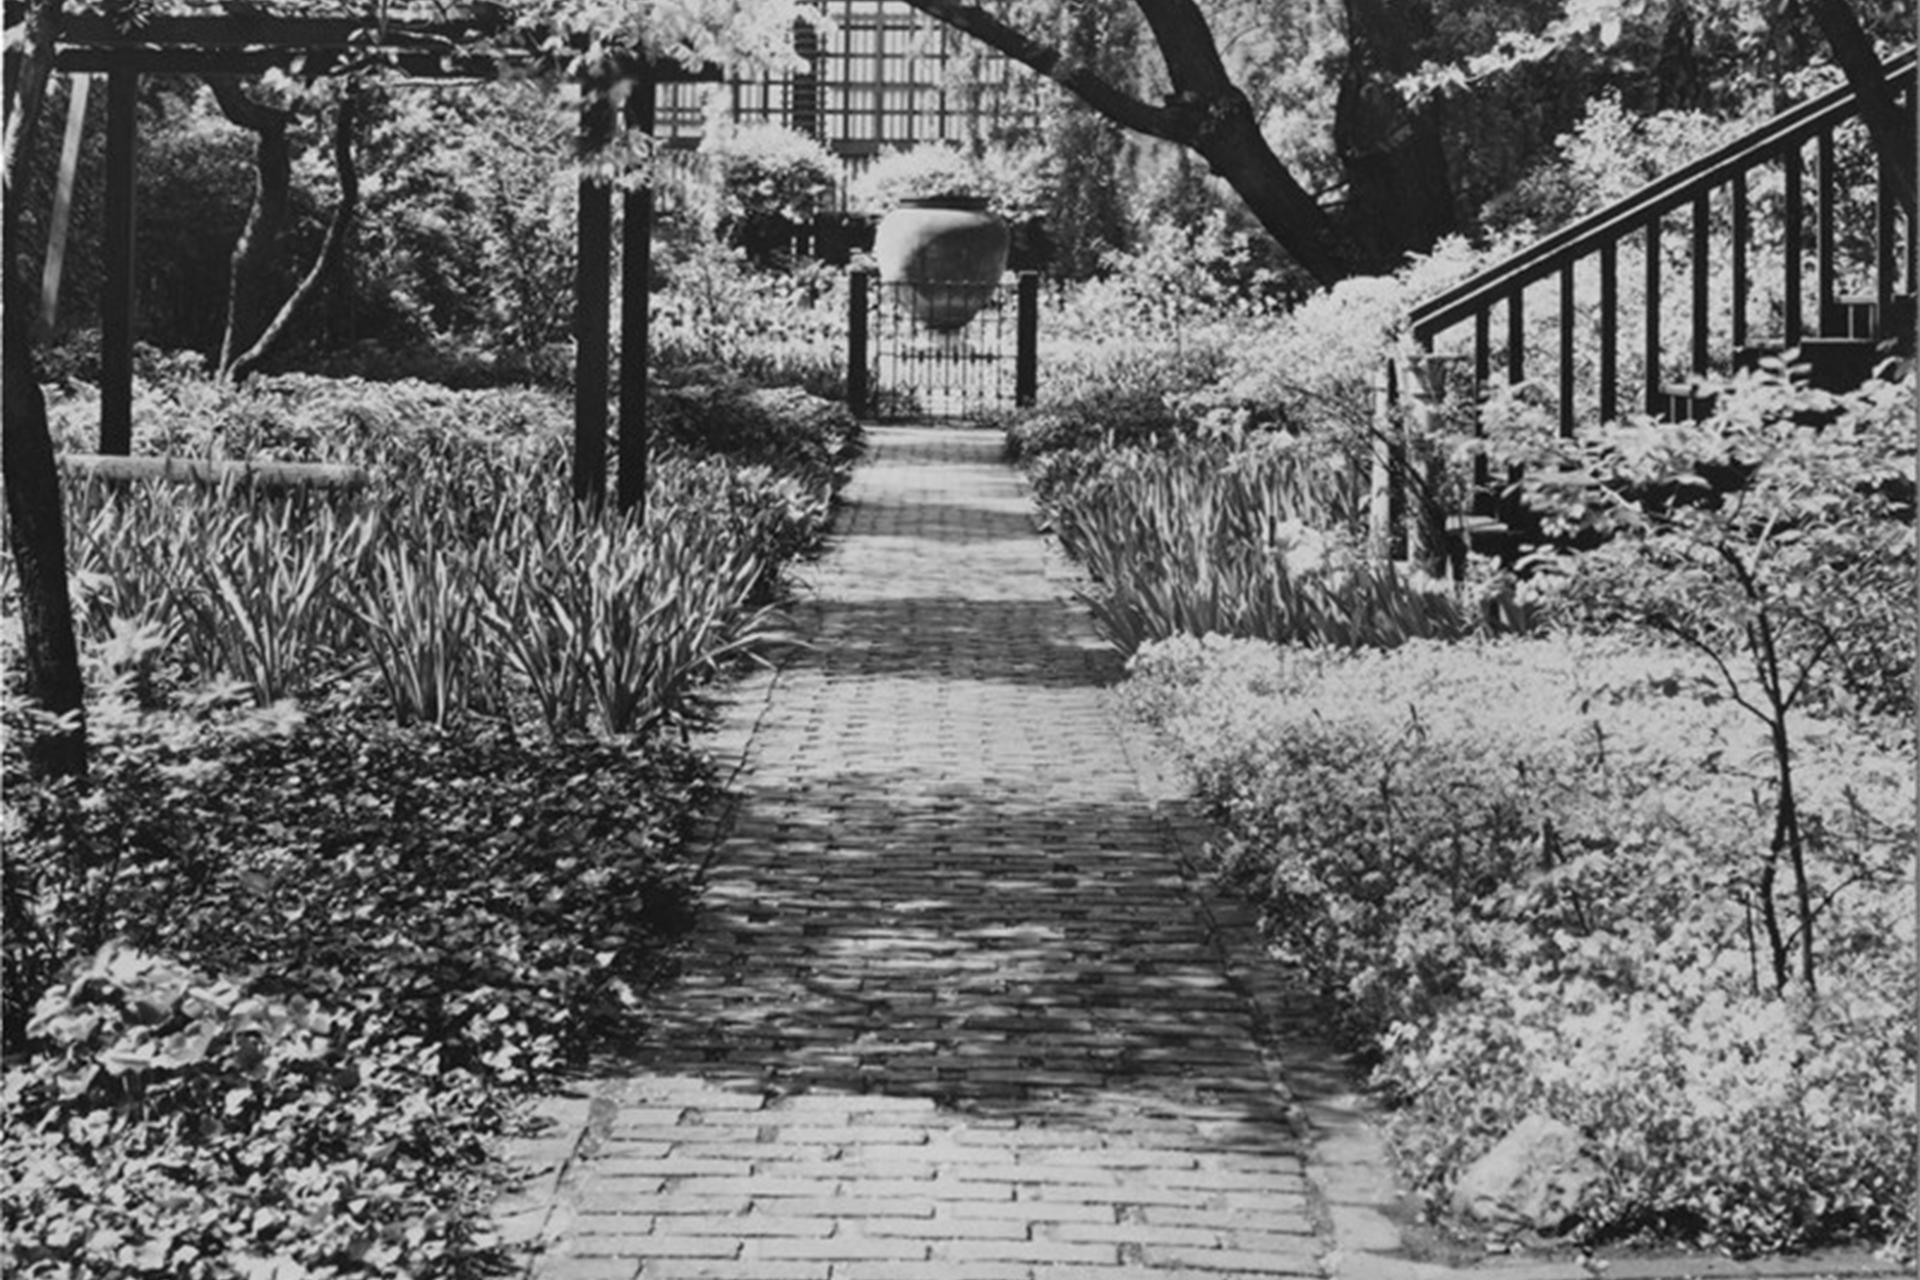 Exterior Monk's Garden at the Isabella Stewart Gardner Museum.